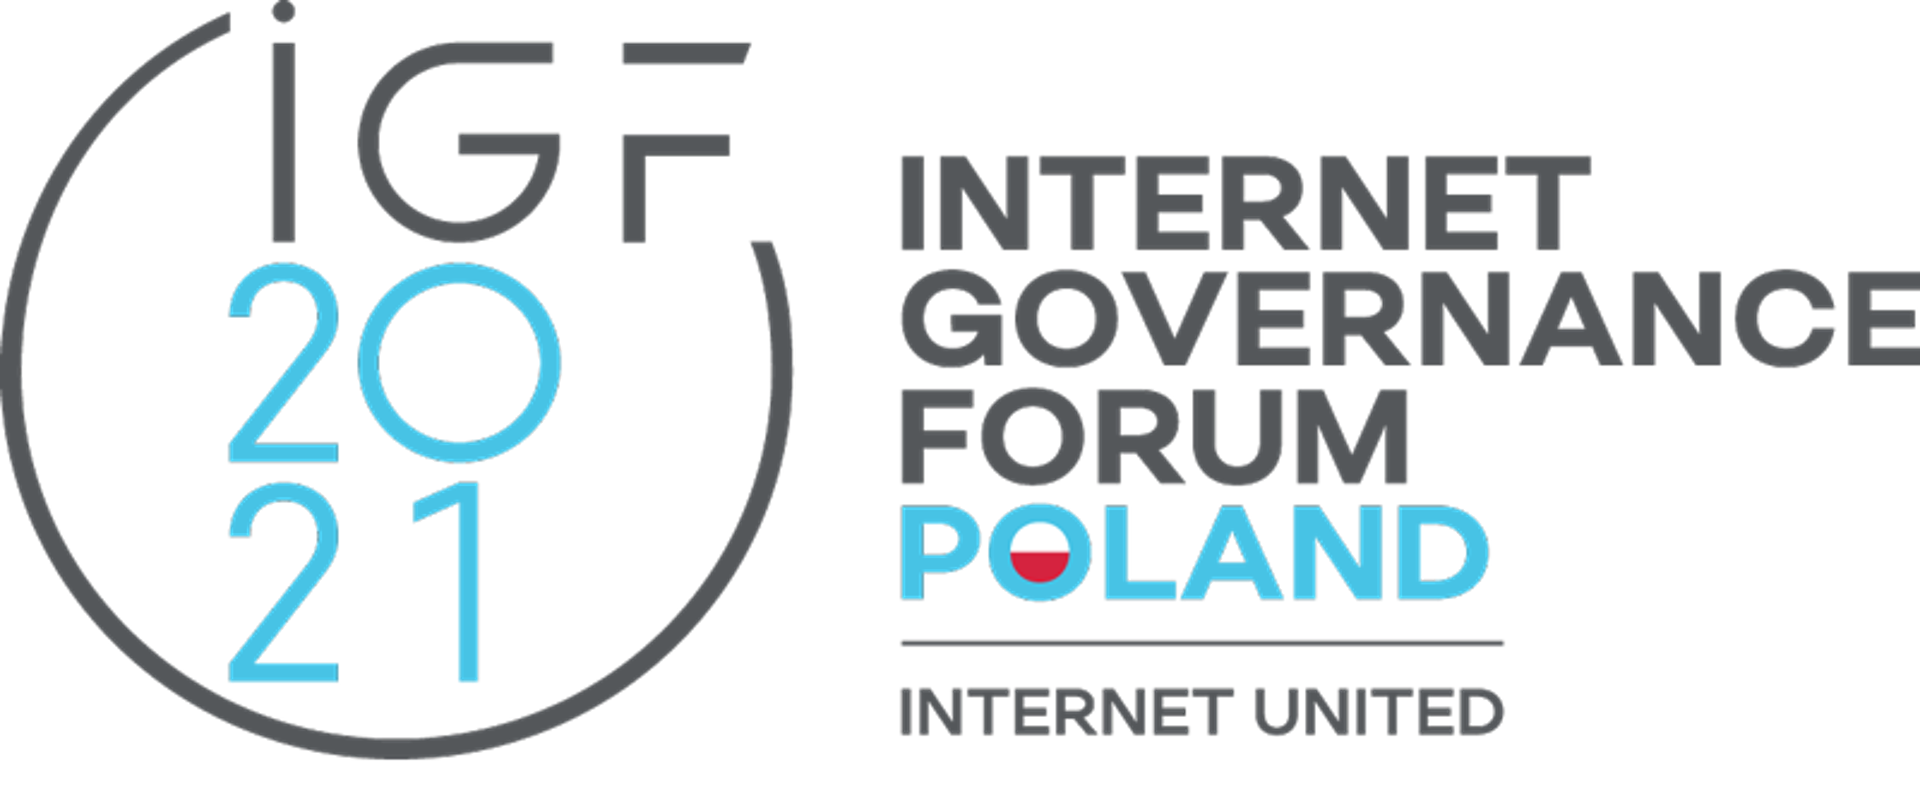 Zdjęcie przedstawia Logo z napisem IGF Poland Internet Governance Forum